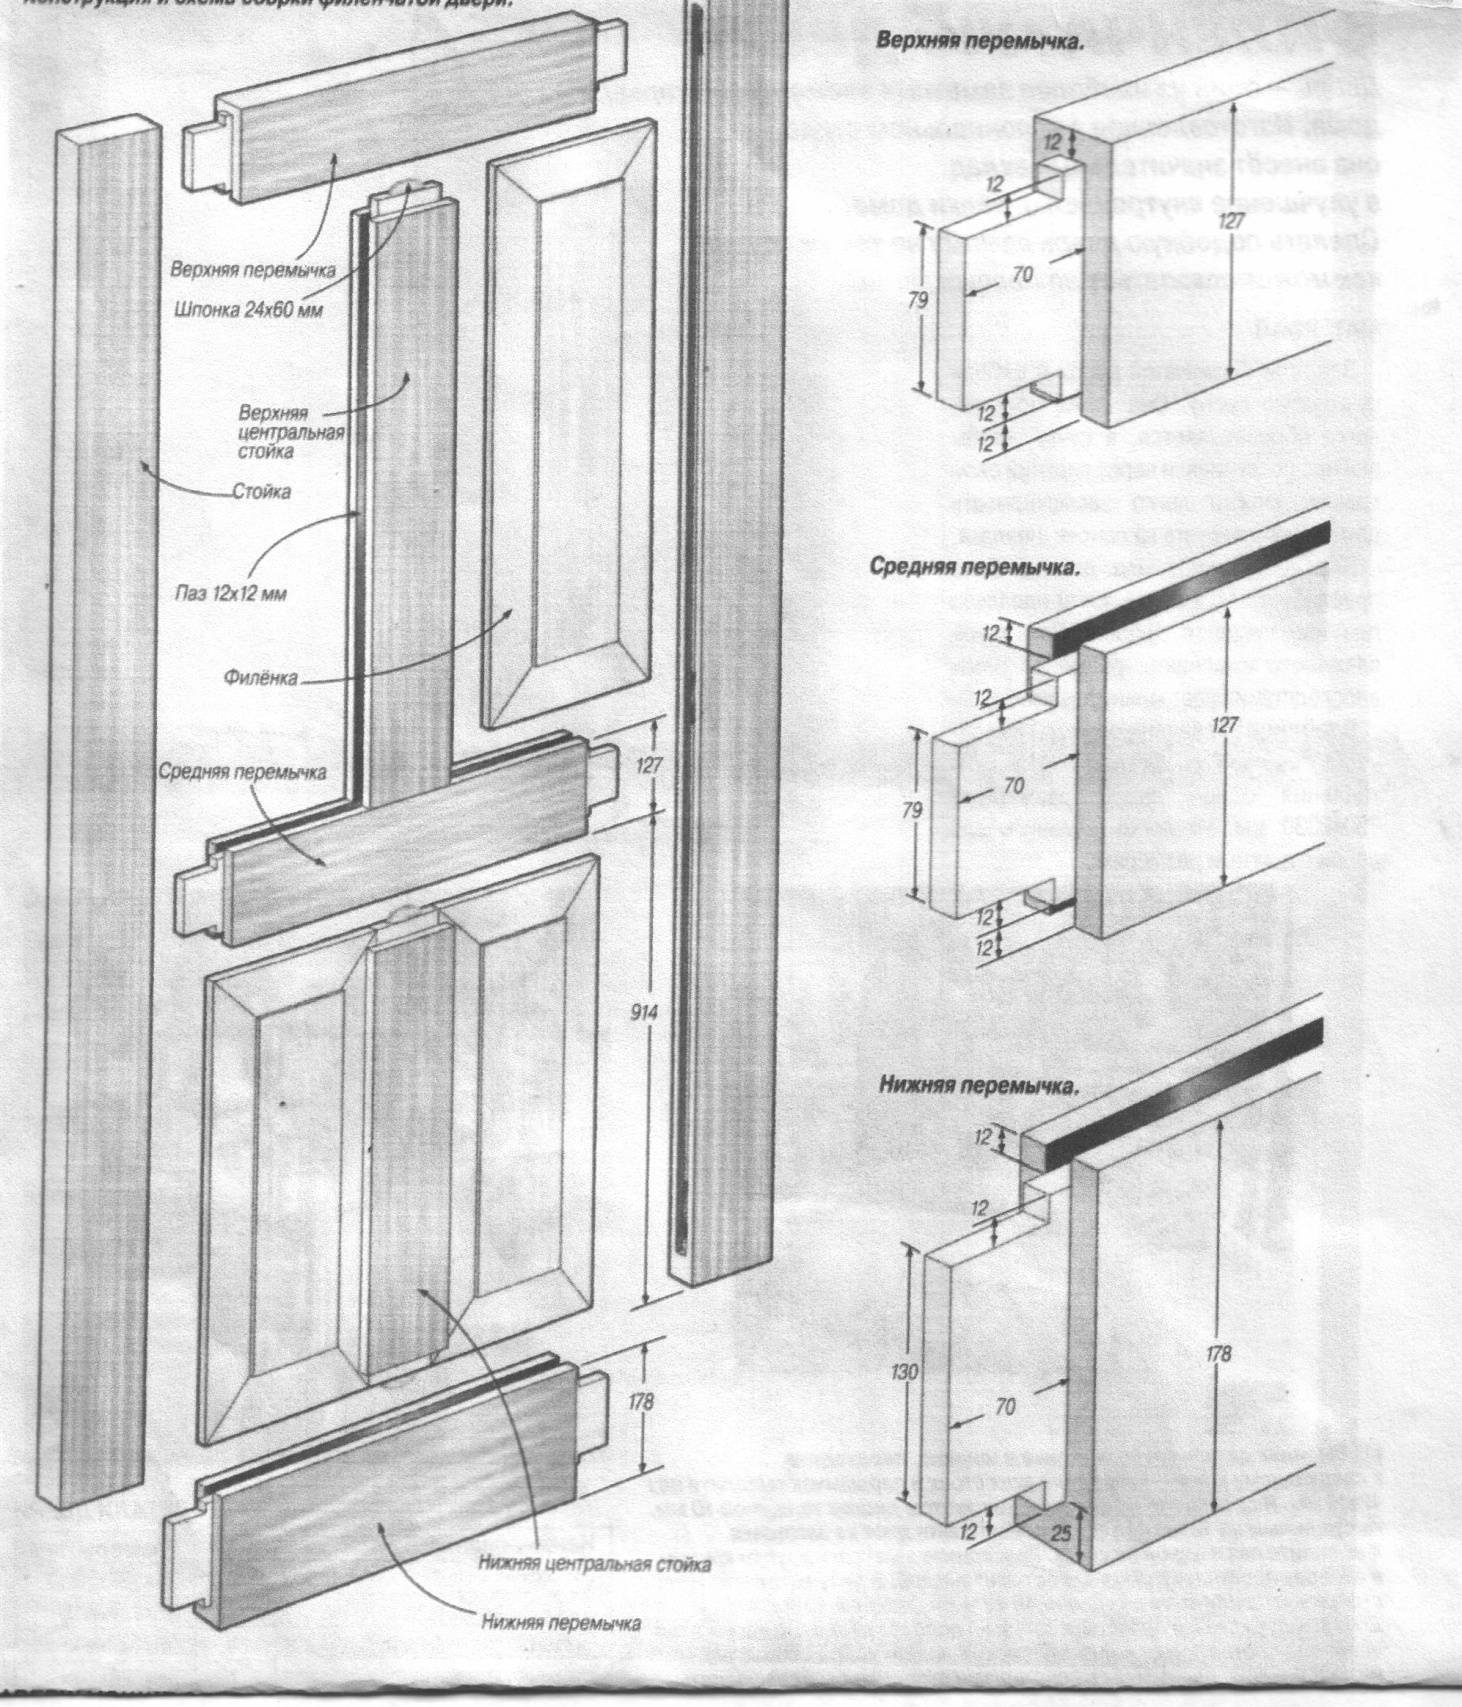 Деревянная дверь своими руками, пошаговая инструкция как самому сделать межкомнатную конструкцию